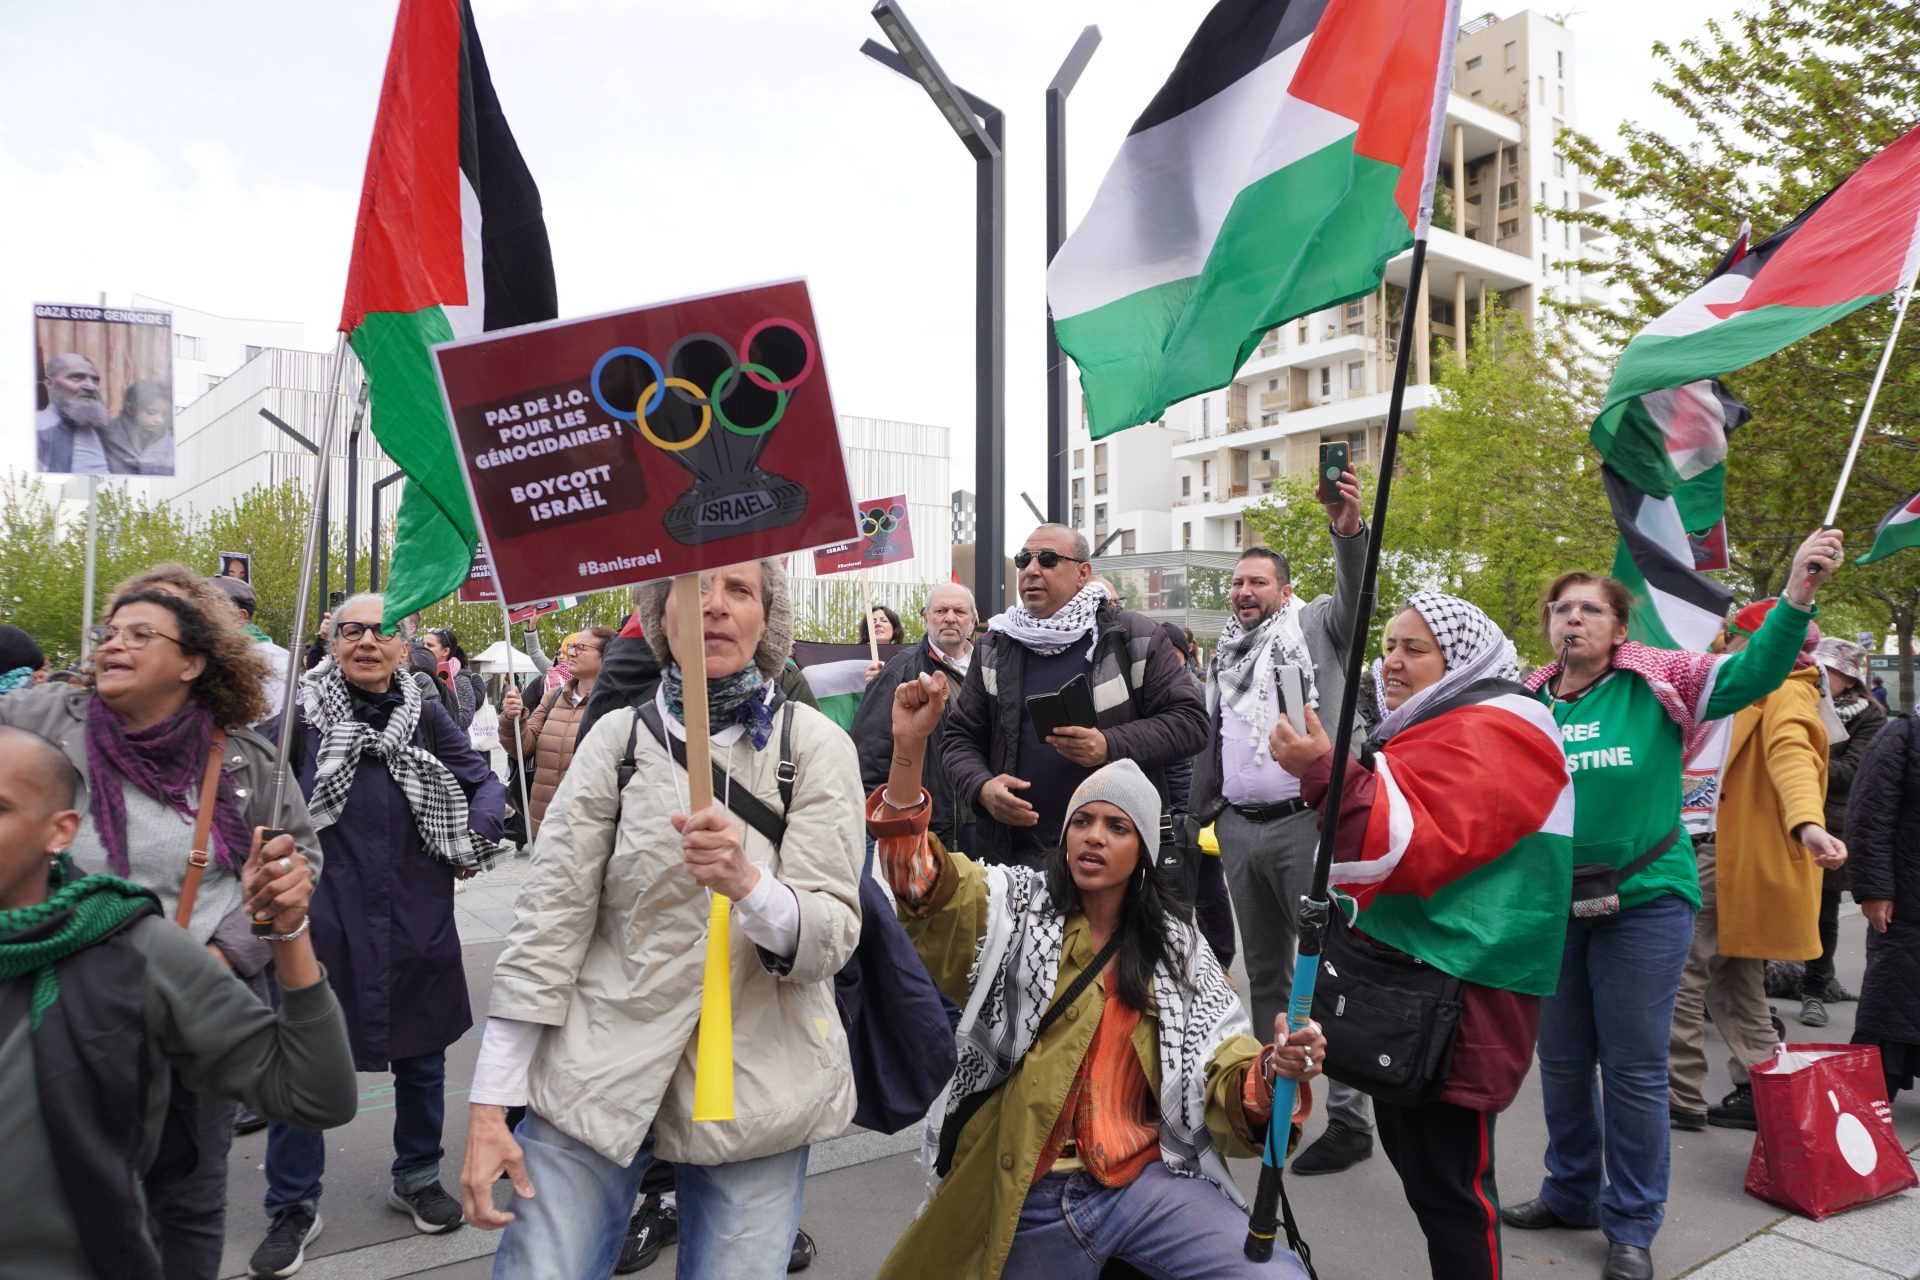 Pas d'Olympiades pour les auteurs de génocide, clament les manifestants à Paris